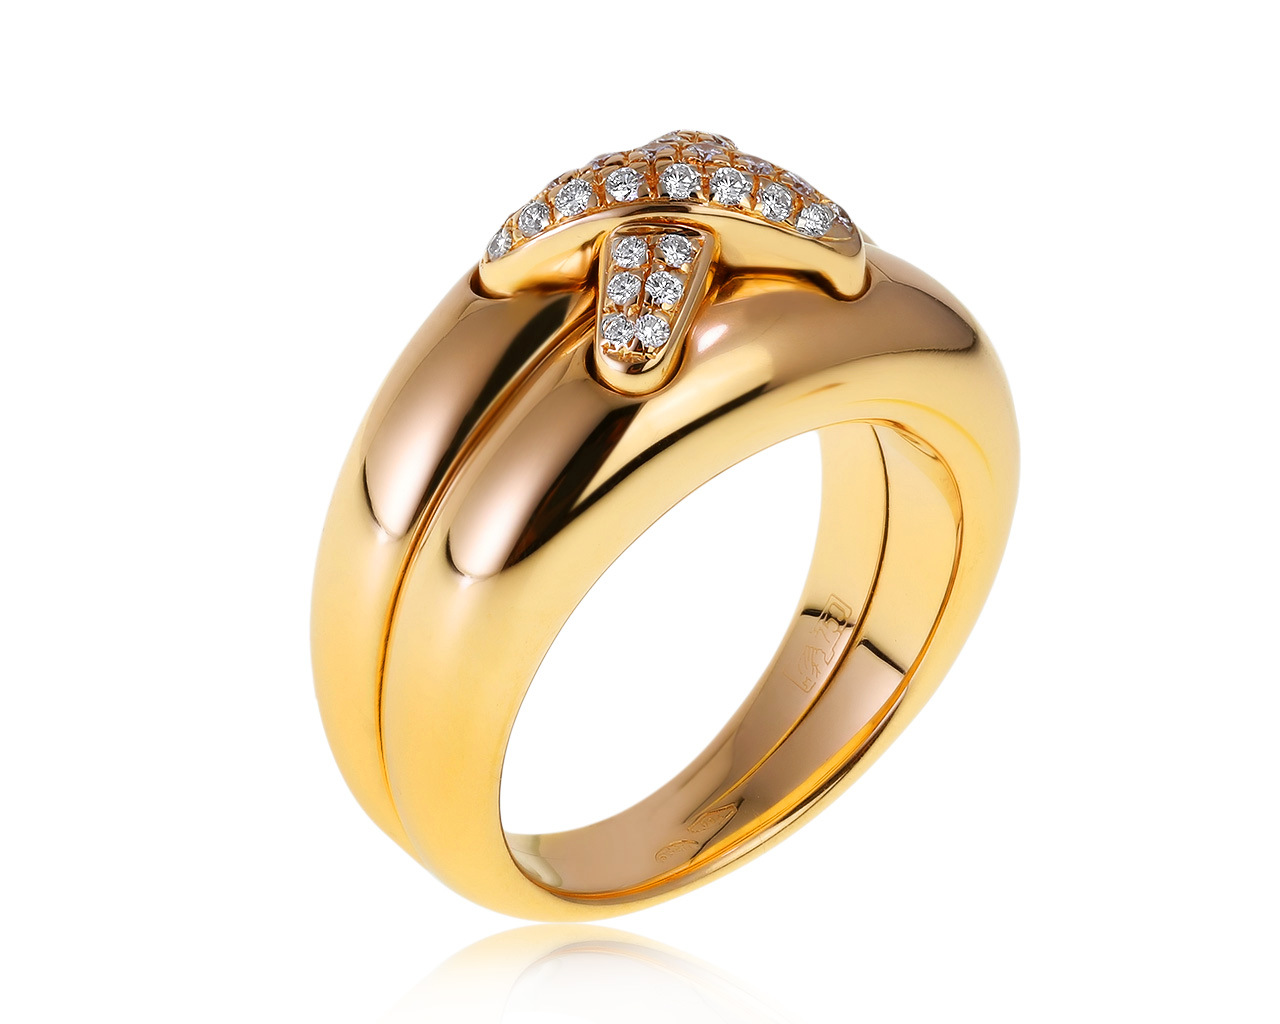 Оригинальное золотое кольцо с бриллиантами 0.56ct Chaumet Liens 010221/5